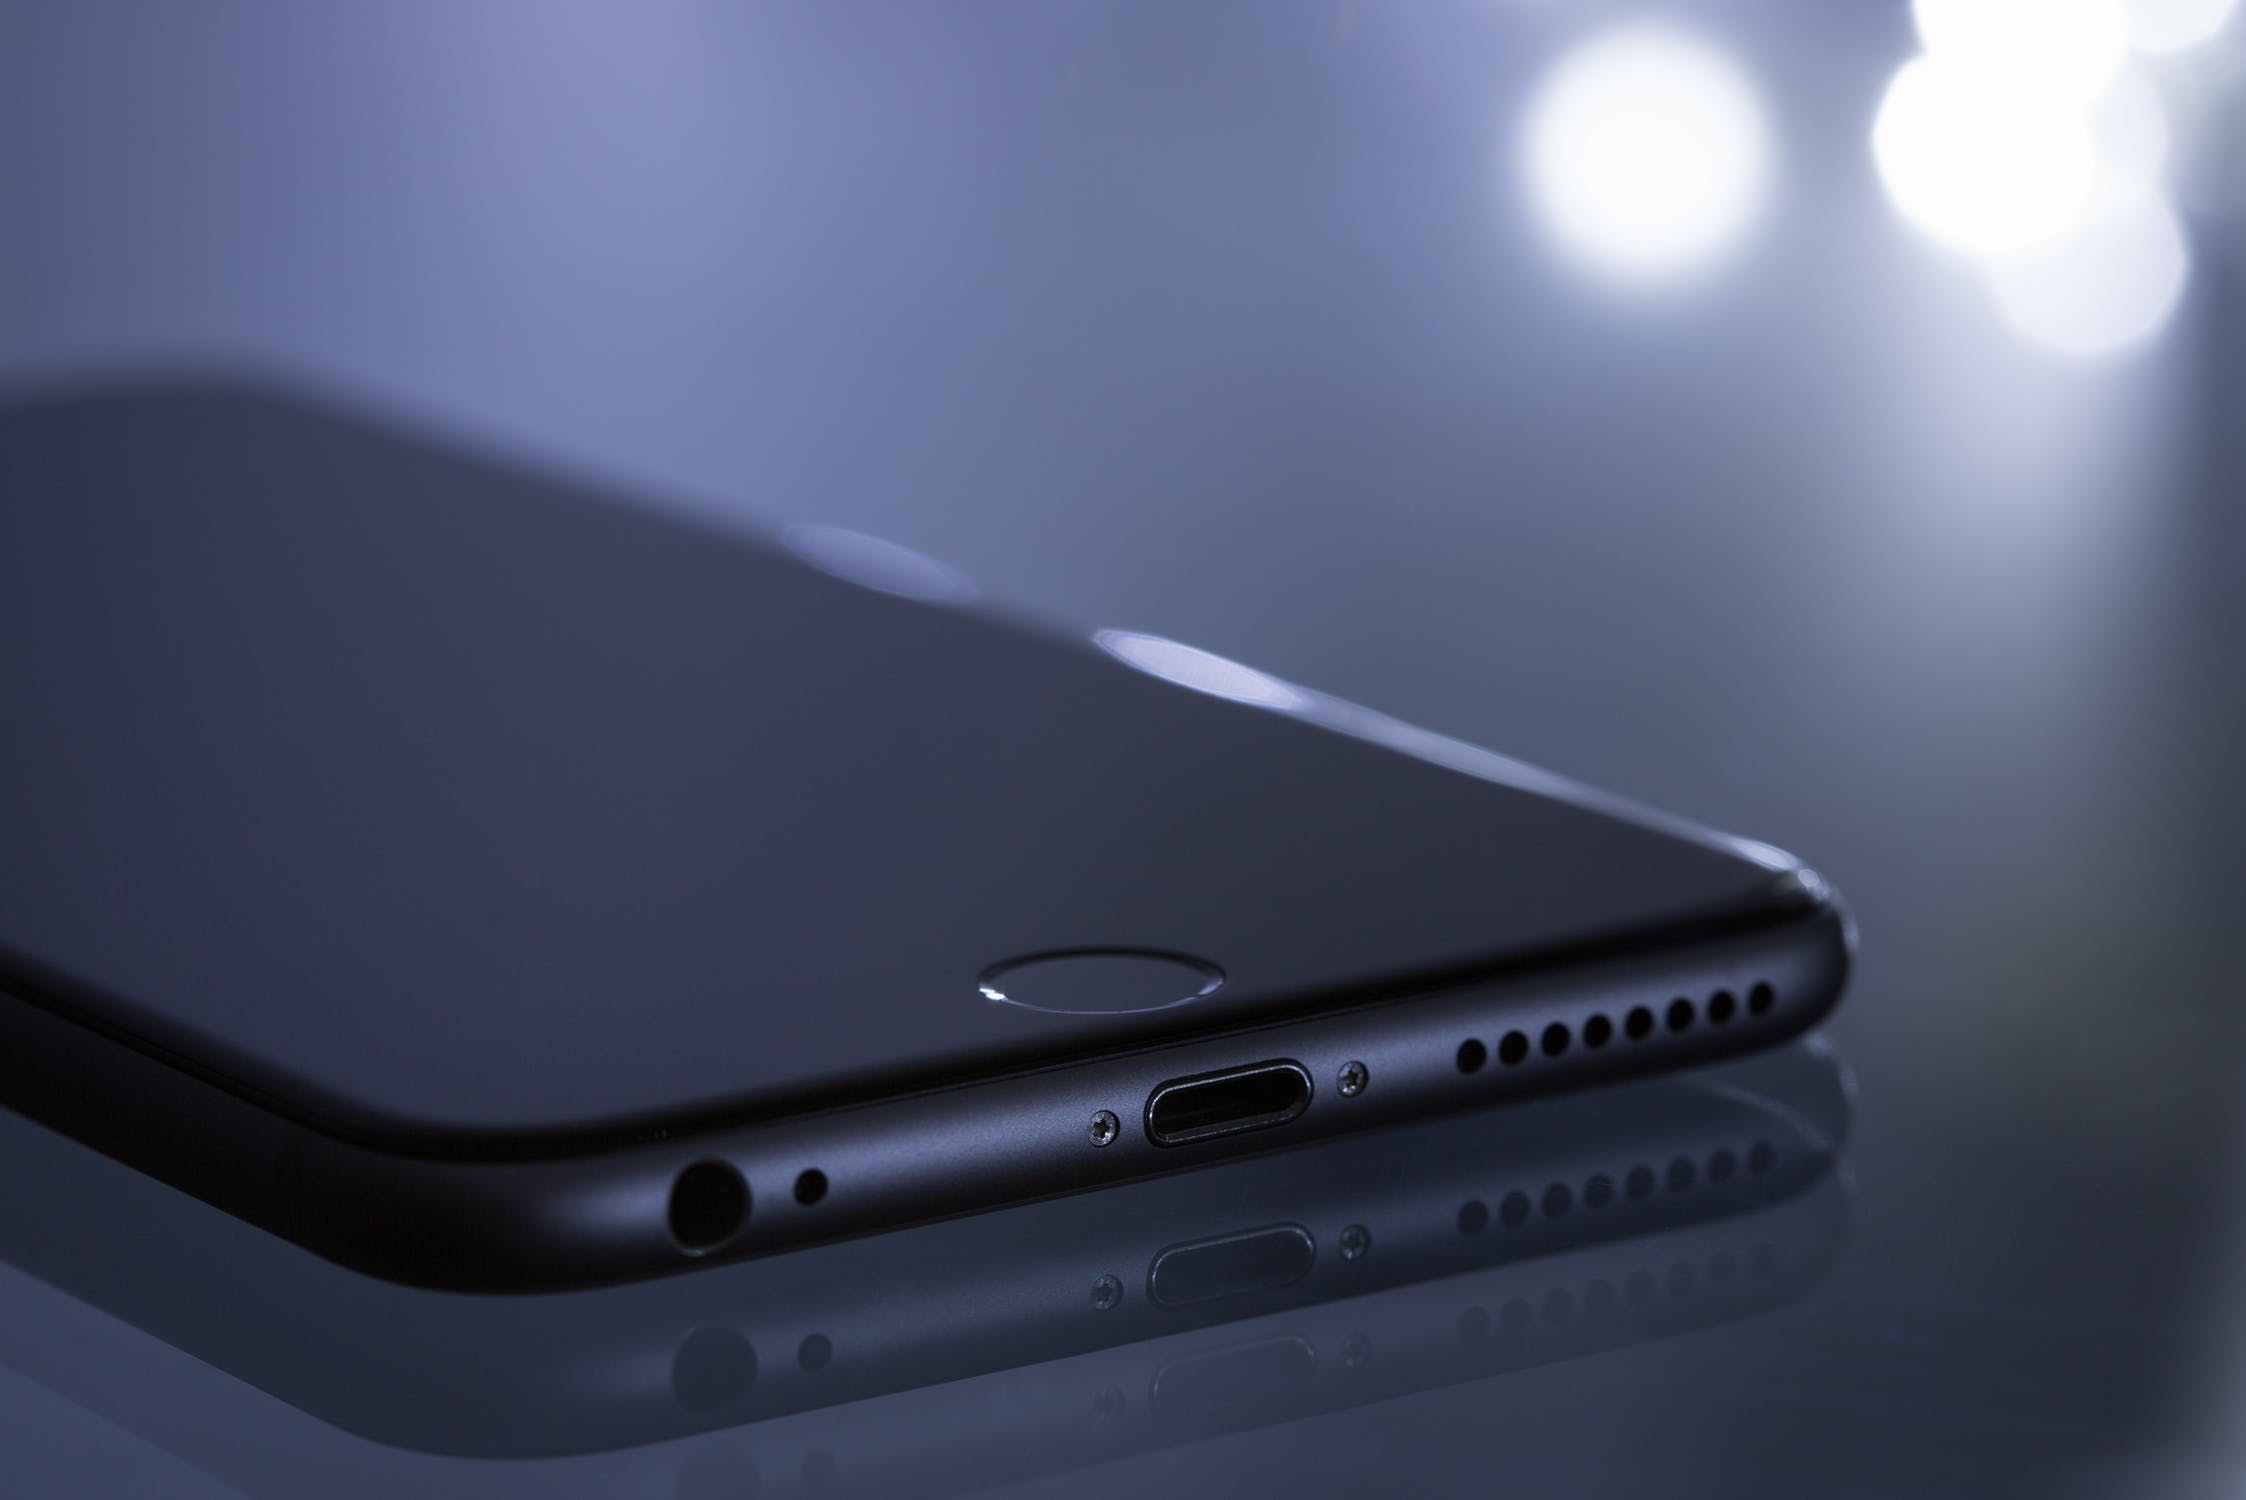 8点1氪 | 比尔·盖茨再登首富宝座；iPhone美国用户数增长停滞；Line和Z Holdings将在2020年合并；抖音海外版TikTok总下载量已超15亿次